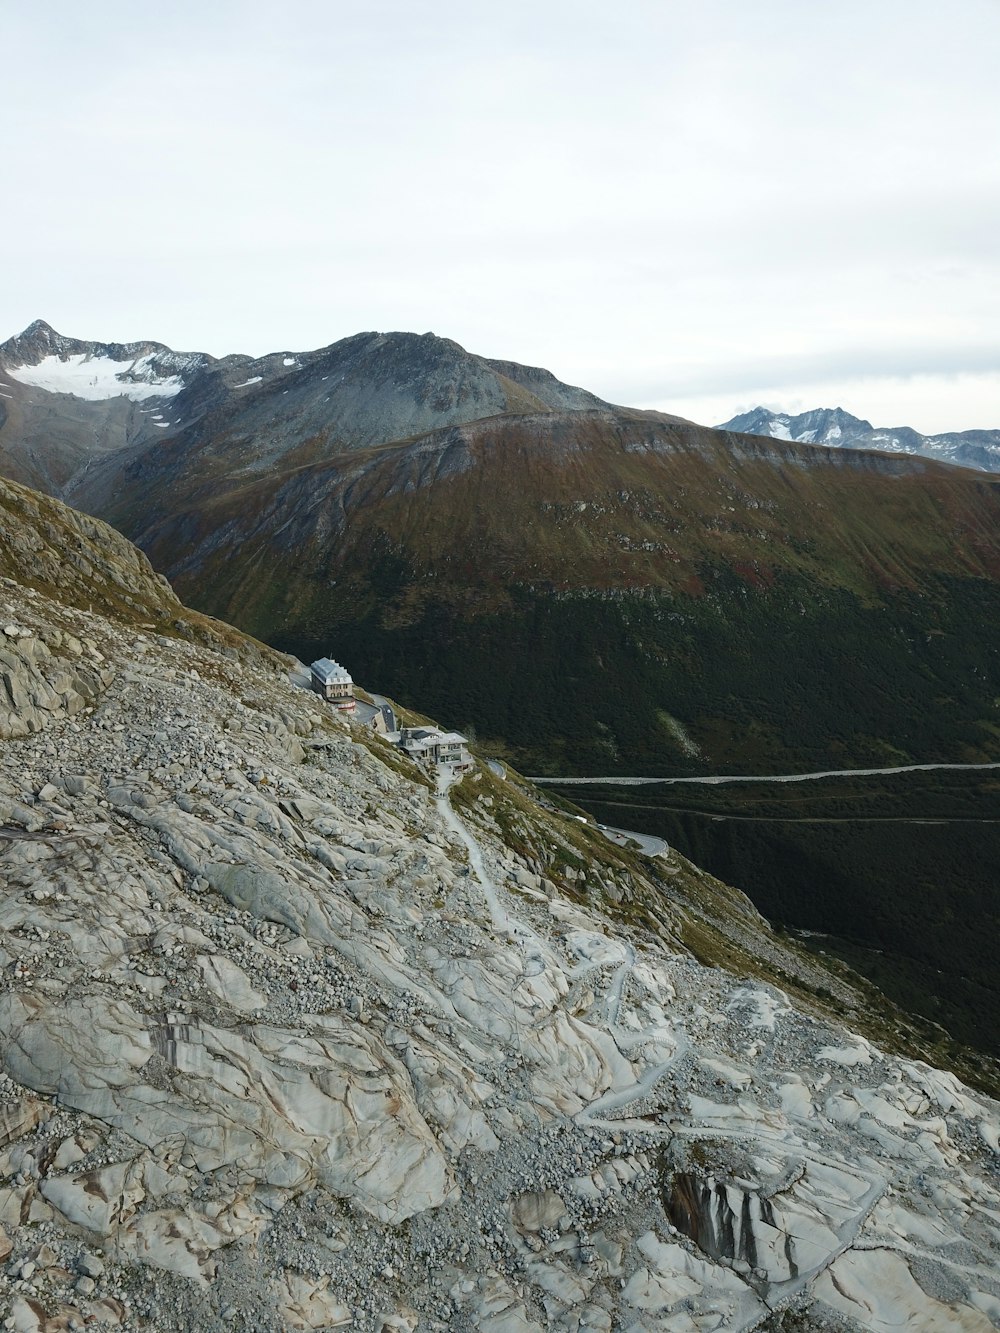 Una vista de una montaña rocosa con un cable que la atraviesa